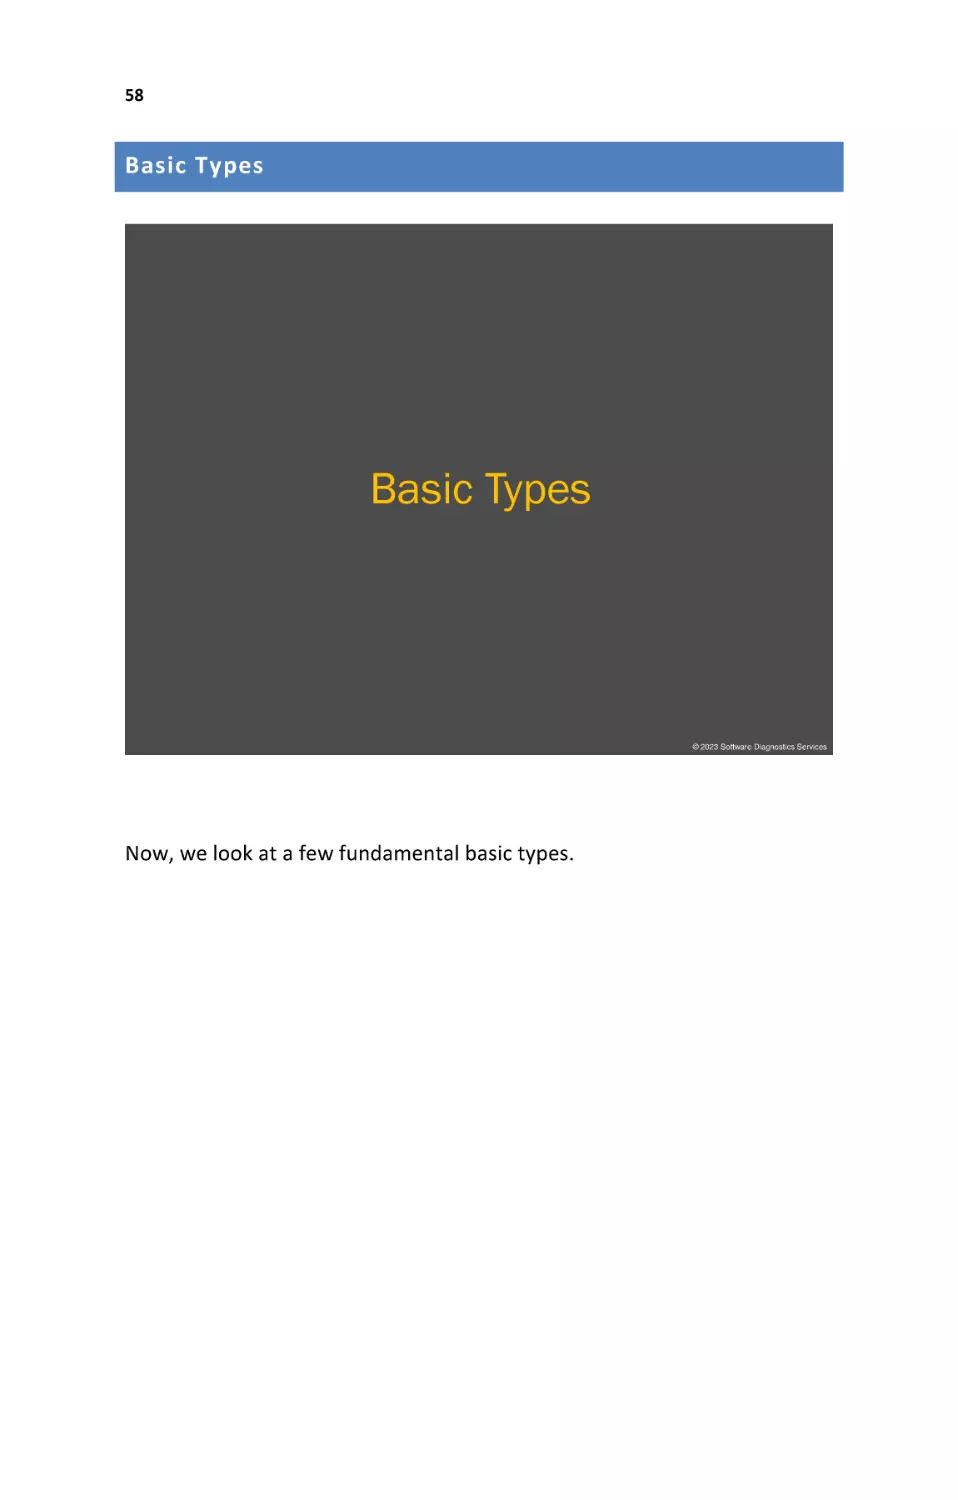 Basic Types